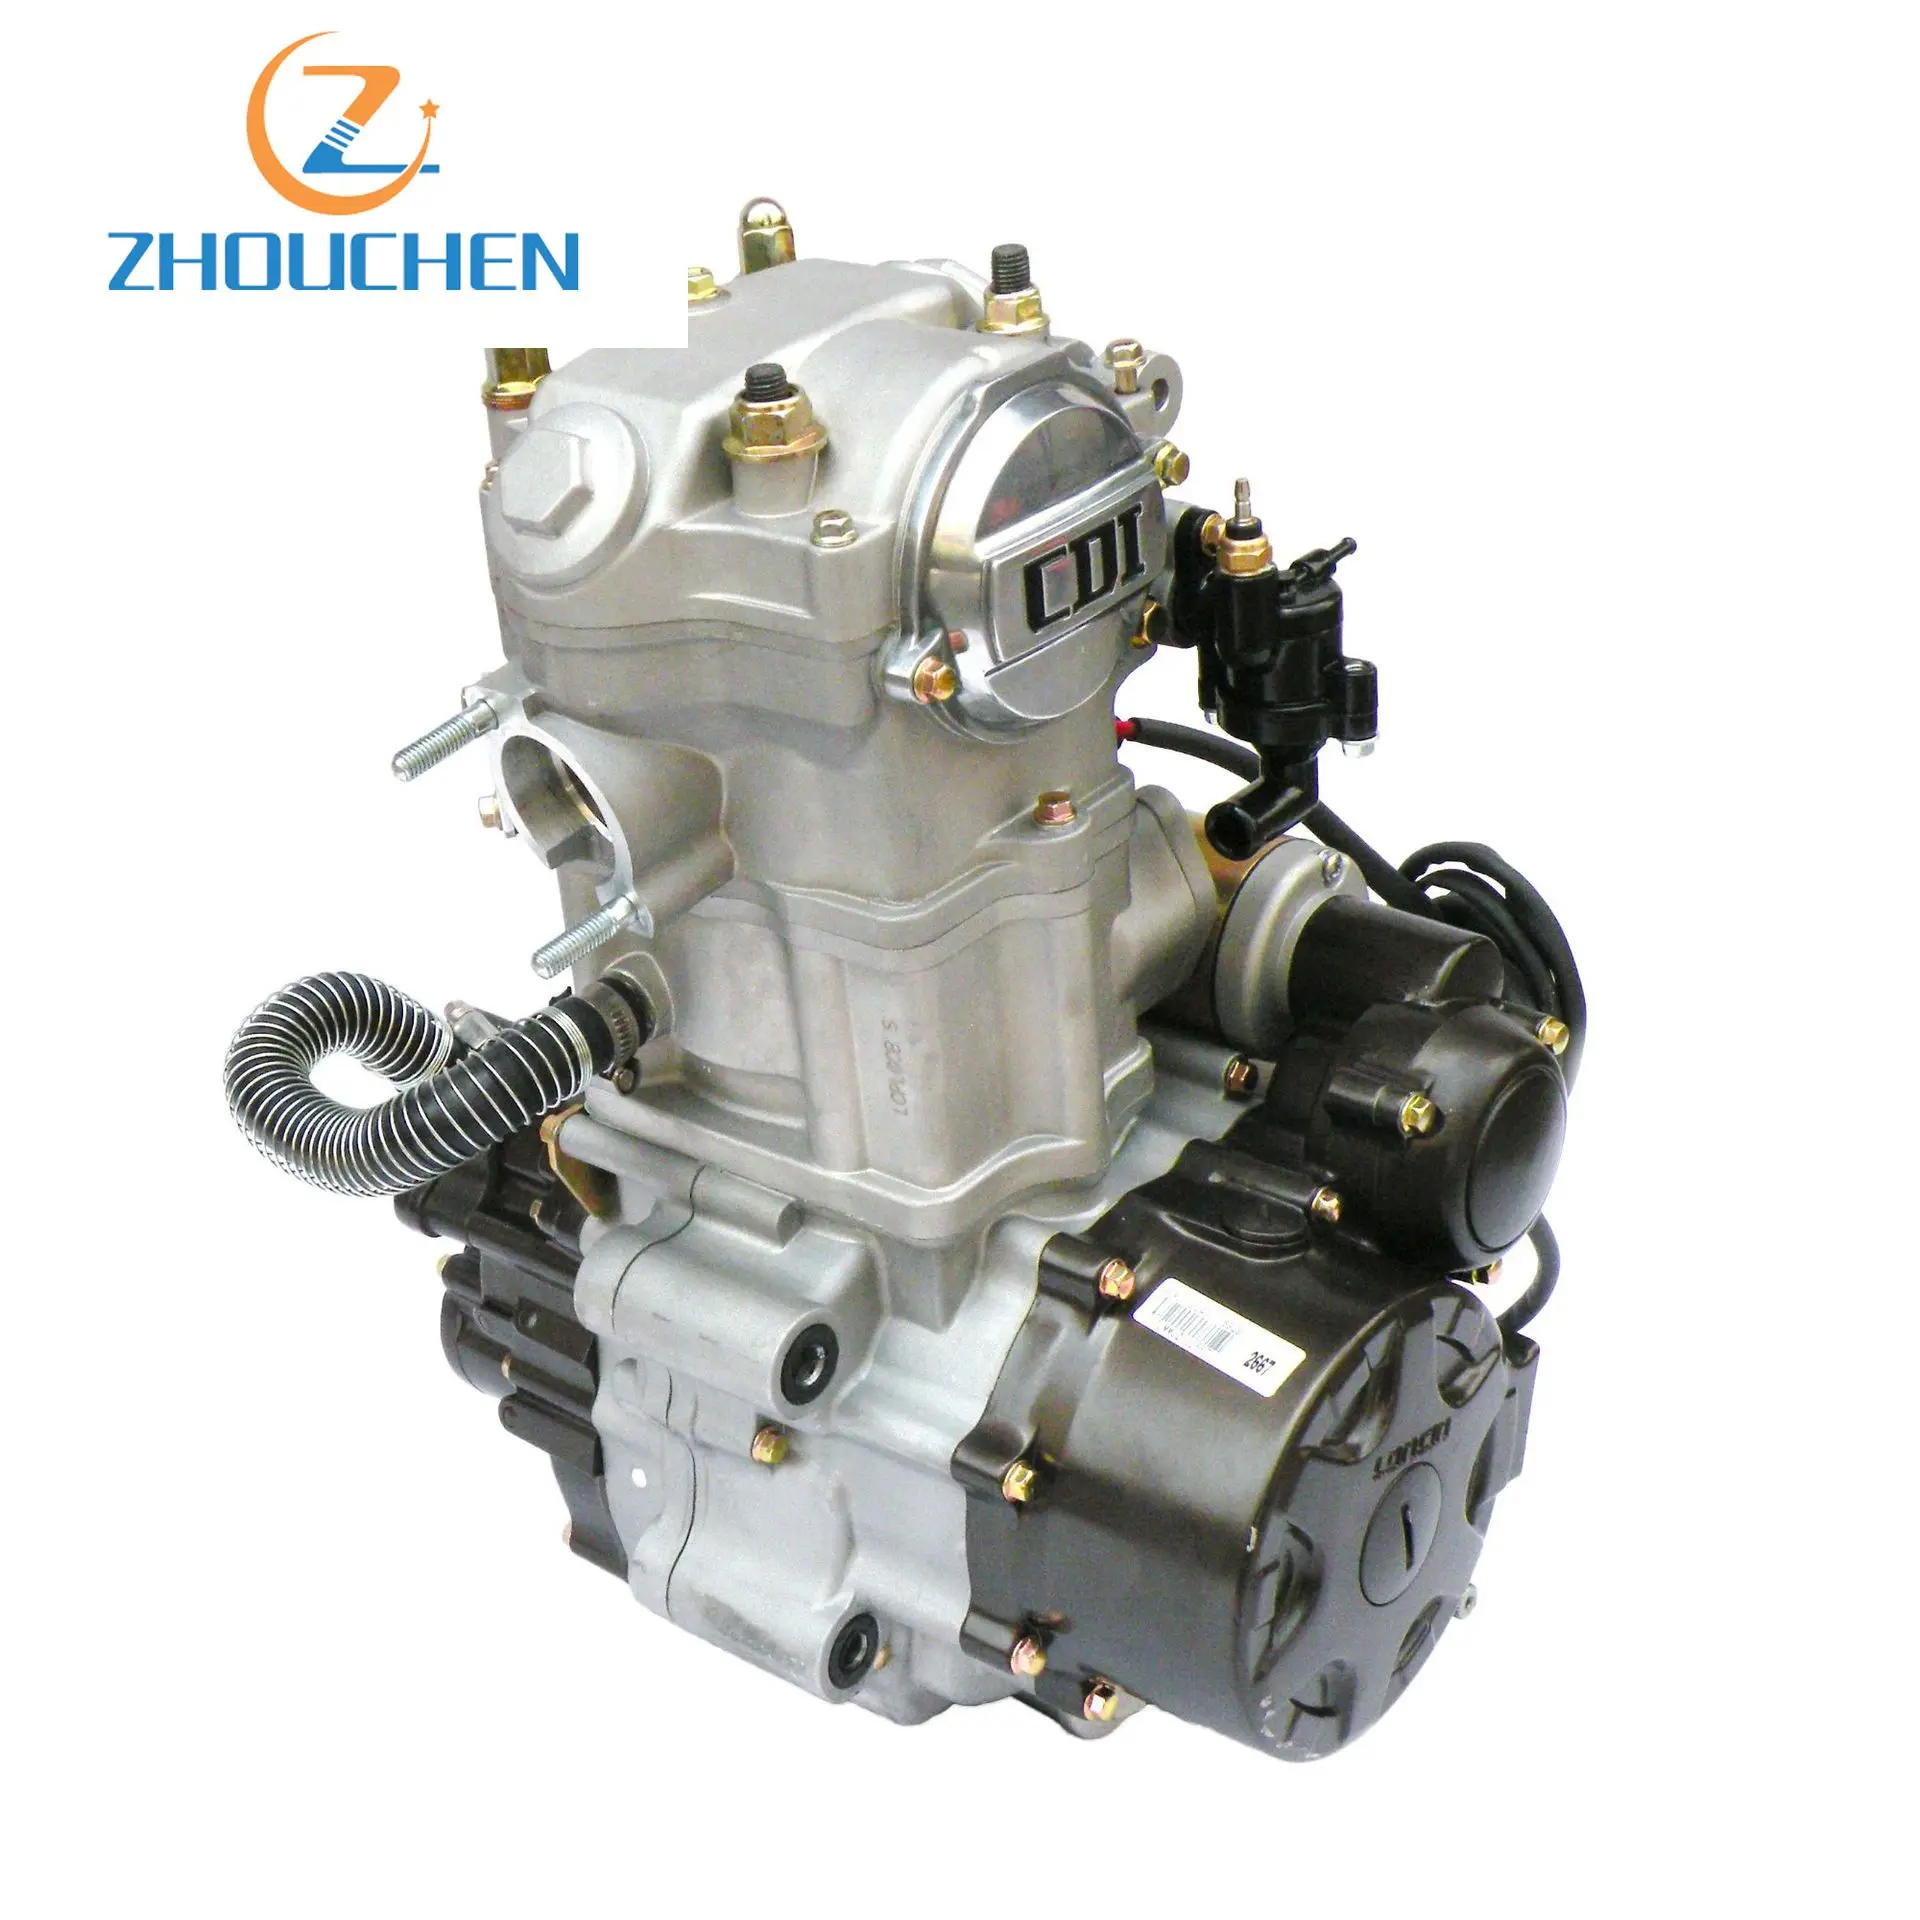 Реверсивный двигатель от производителя для мотоцикла, аксессуары для Модификации ATV, пляжный автомобиль Longxin cb250, с водяным охлаждением, 4+ 1, прямые продажи